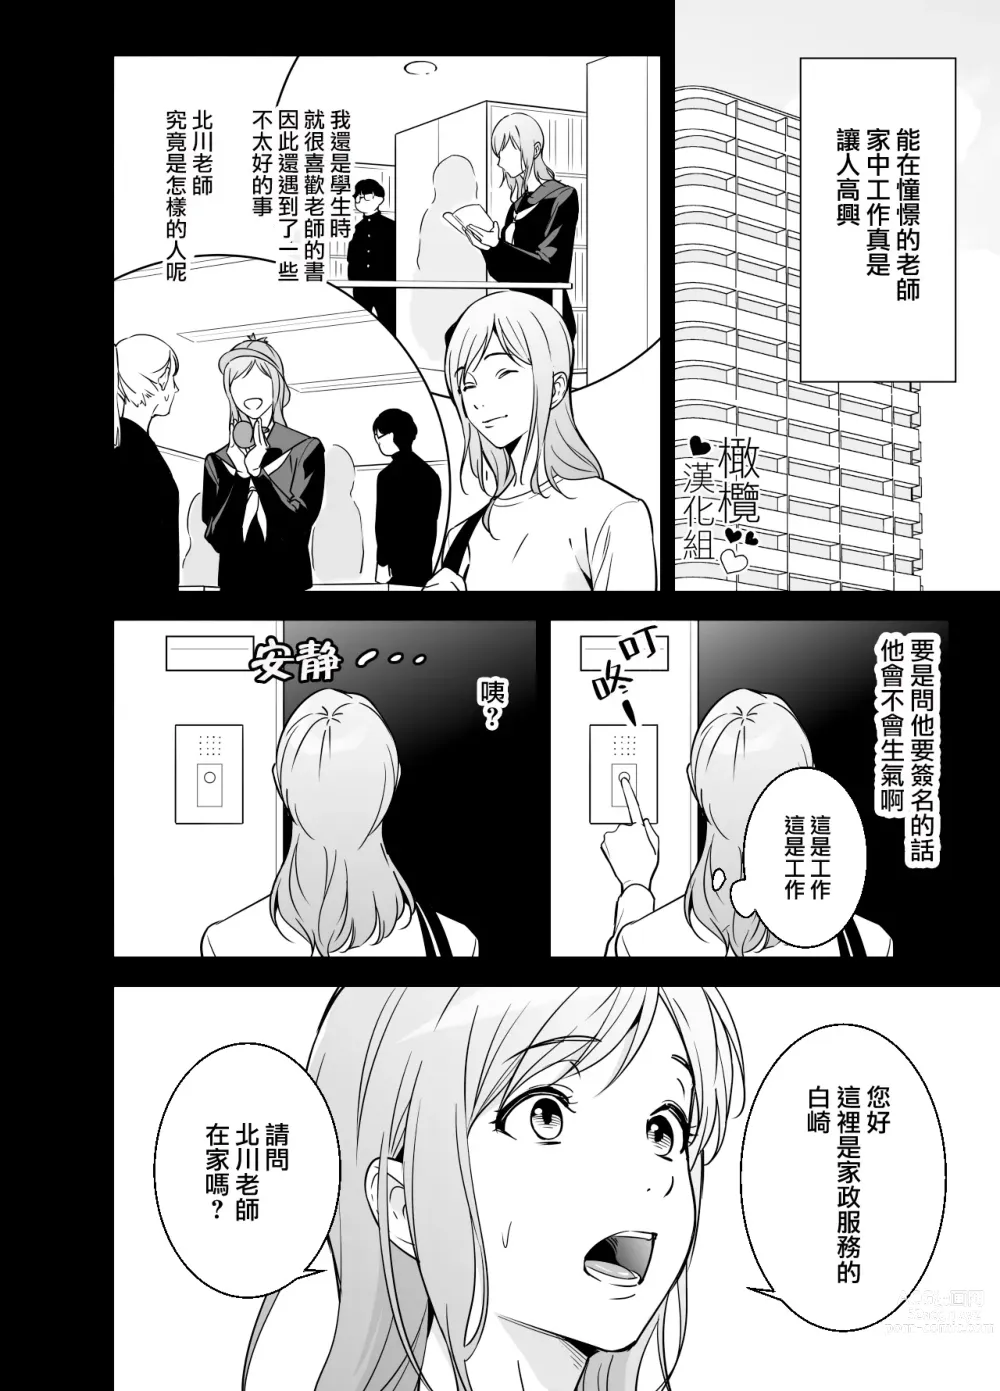 Page 7 of doujinshi 处男小说家和家政妇小姐